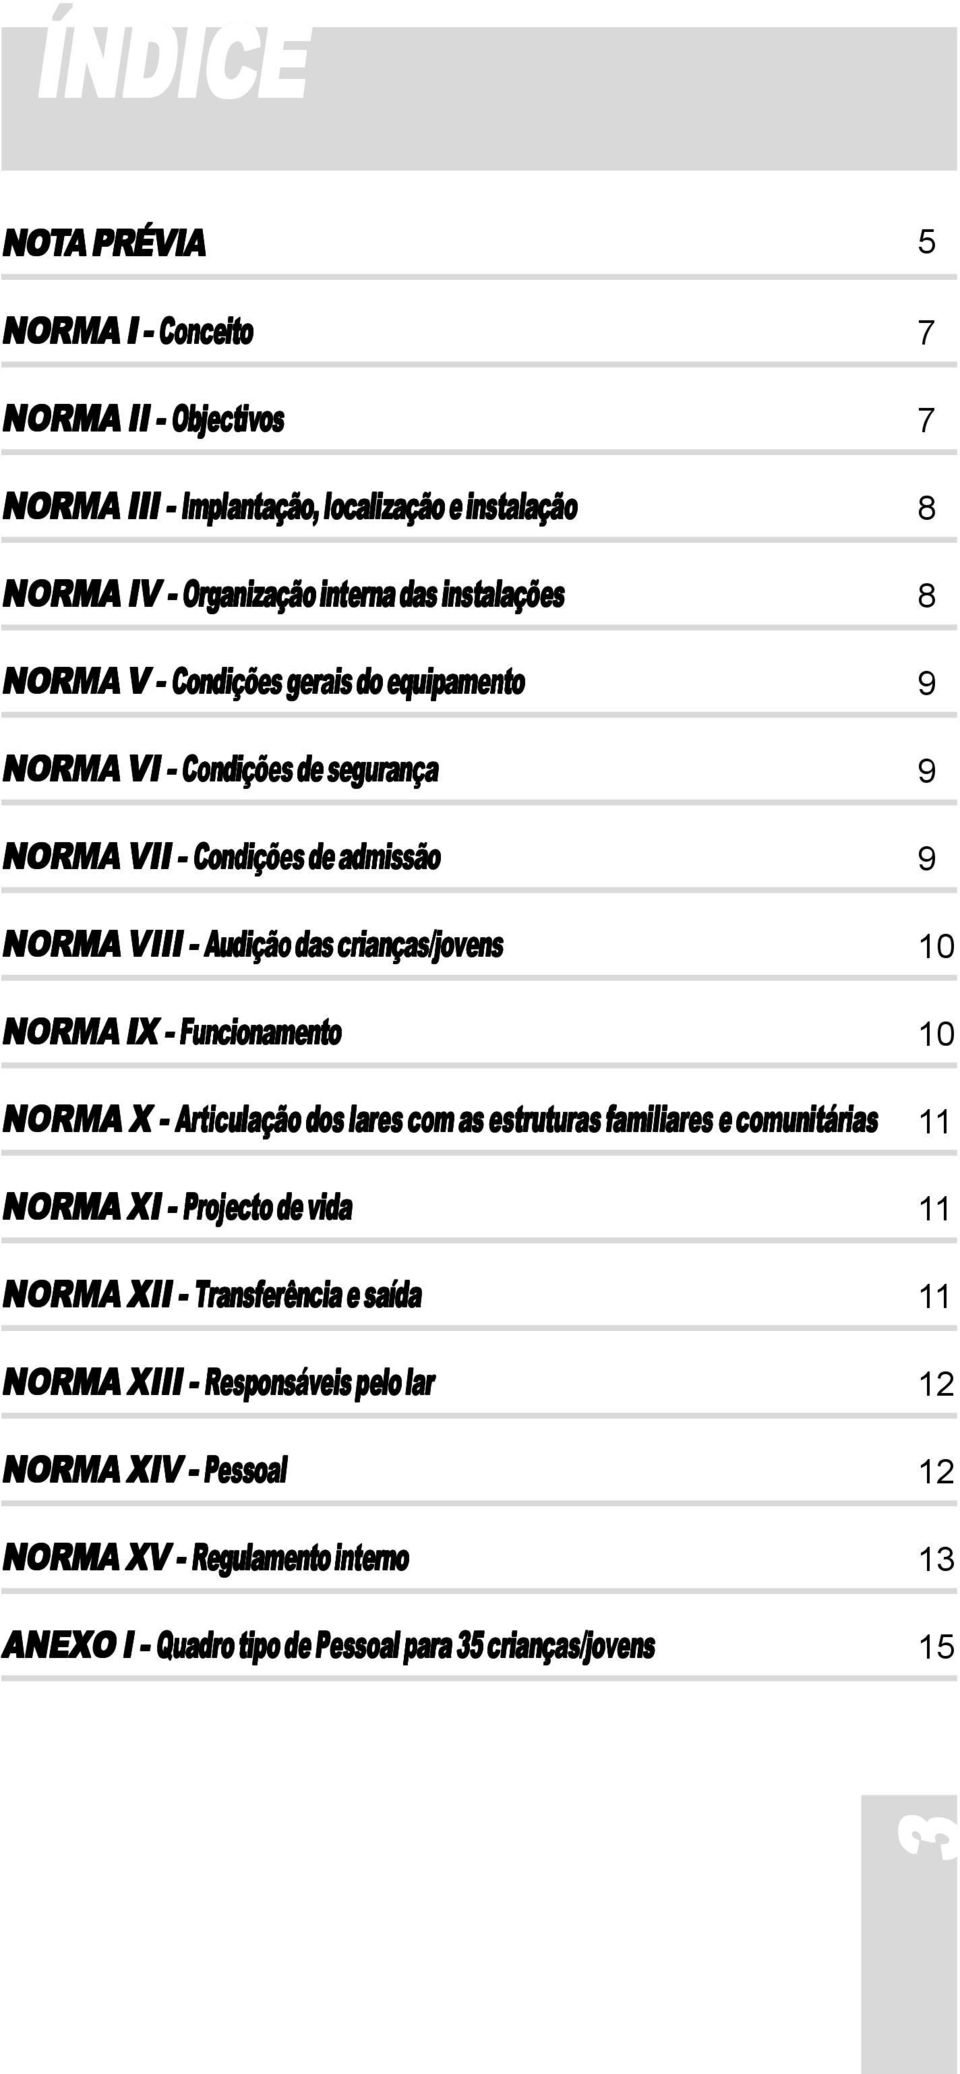 NORMA IX - Funcionamento NORMA X - Articulação dos lares com as estruturas familiares e comunitárias NORMA XI - Projecto de vida NORMA XII - Transferência e saída